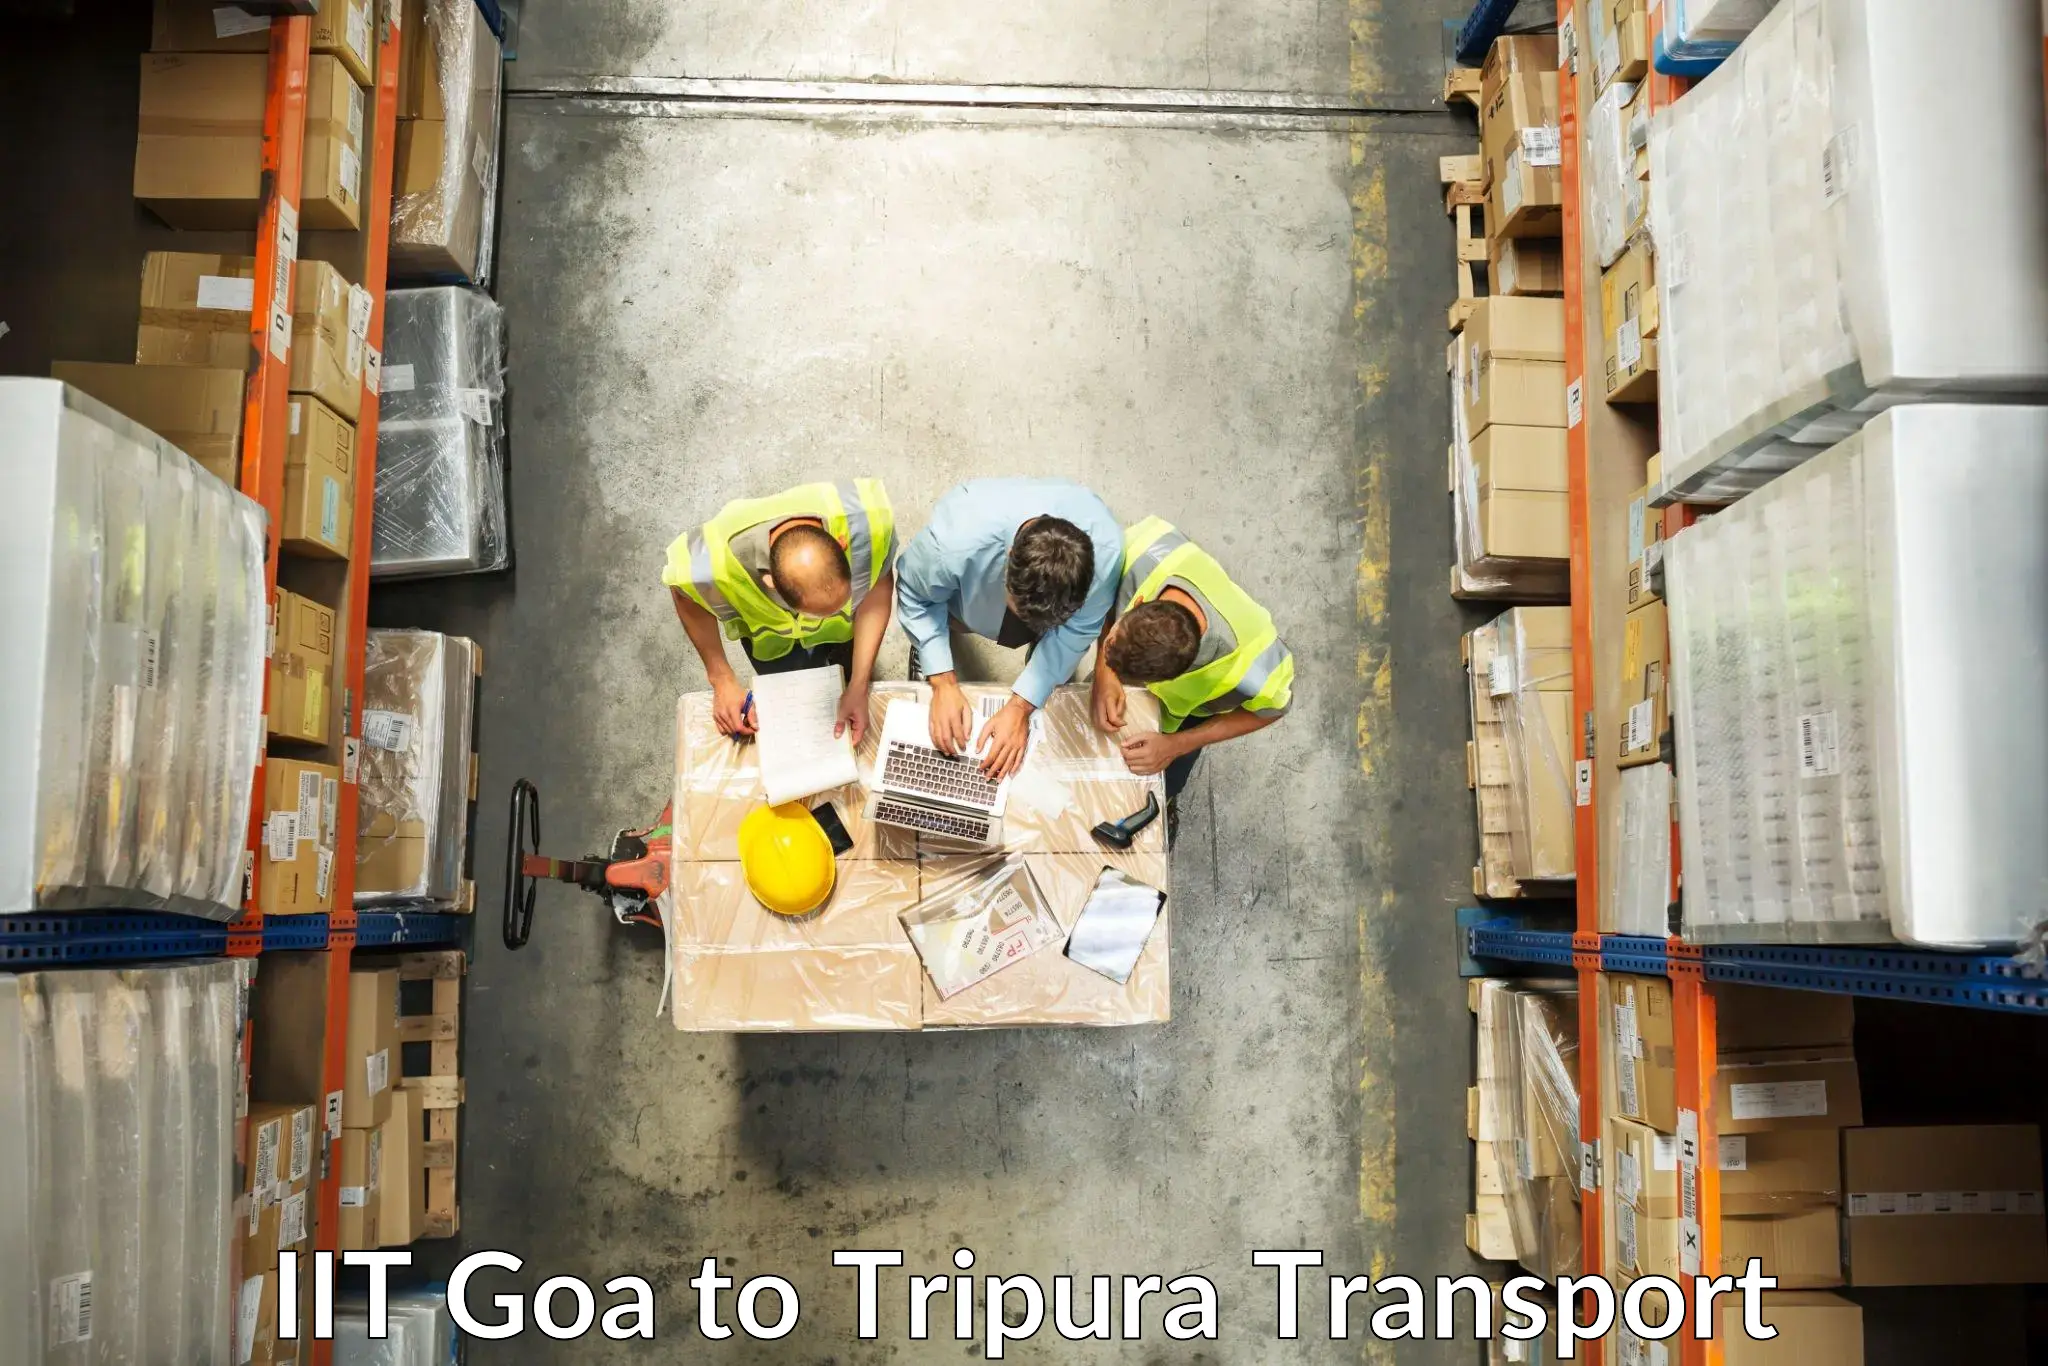 Furniture transport service in IIT Goa to Manu Bazar